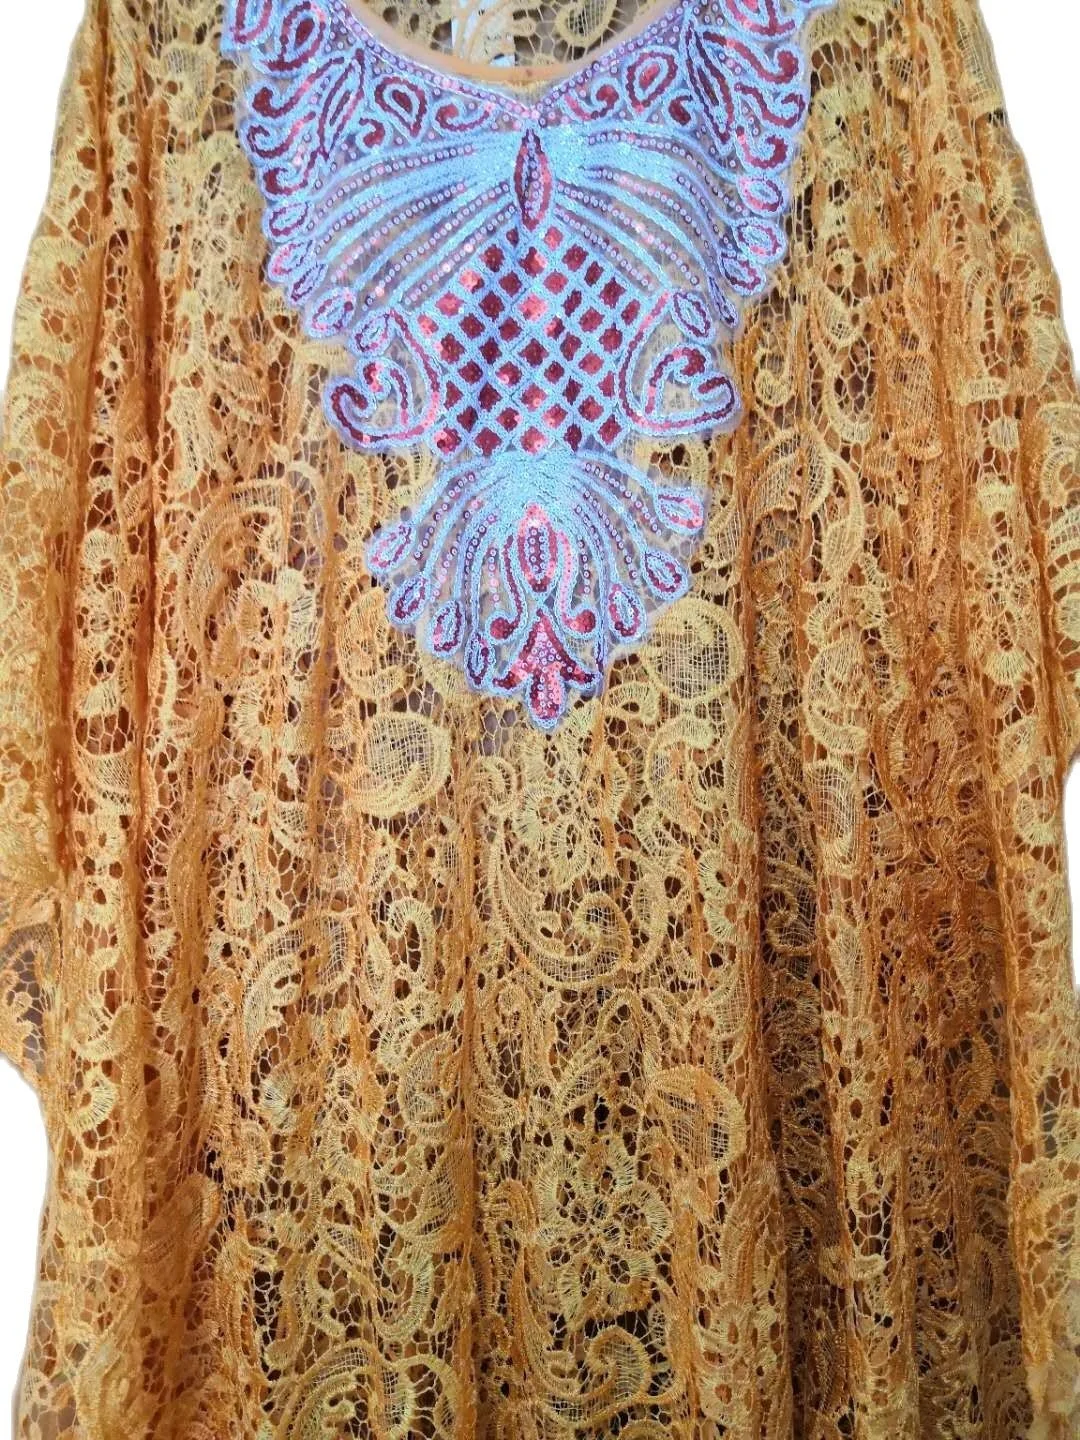 

Африканская мода Женская кружевная абайя с гипюровым шнурком стильная юбка KWA Dashiki внутри и Свободное длинное платье из 2 частей свободного ...